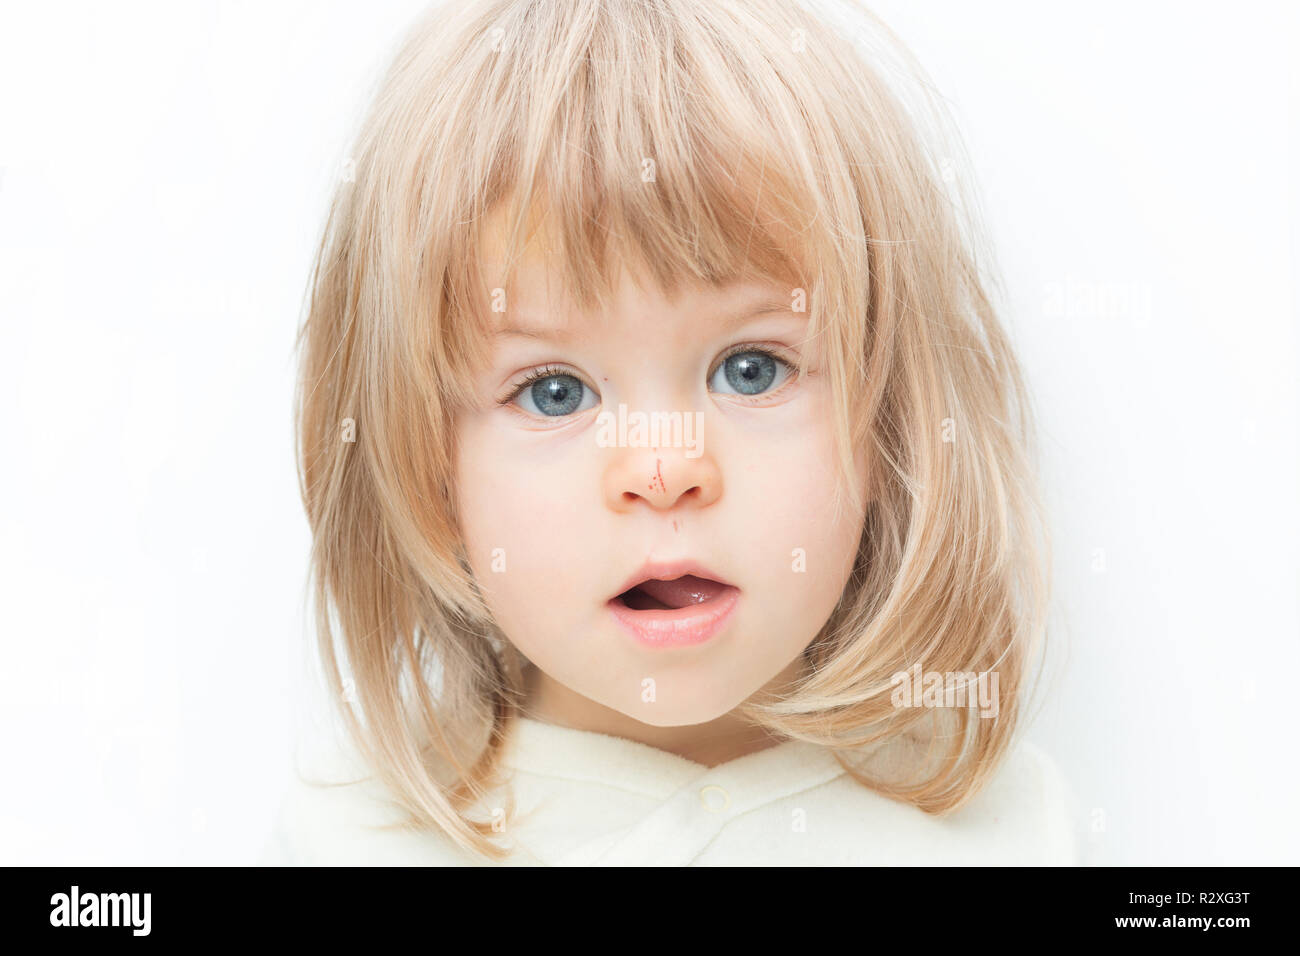 Close up portrait of baby girl cheveux blond avec une rayure sur son nez isolé sur le fond blanc. Surpris female toddler, garde la bouche ouverte. Le concept de sécurité de l'enfant, les blessures de tomber. Banque D'Images